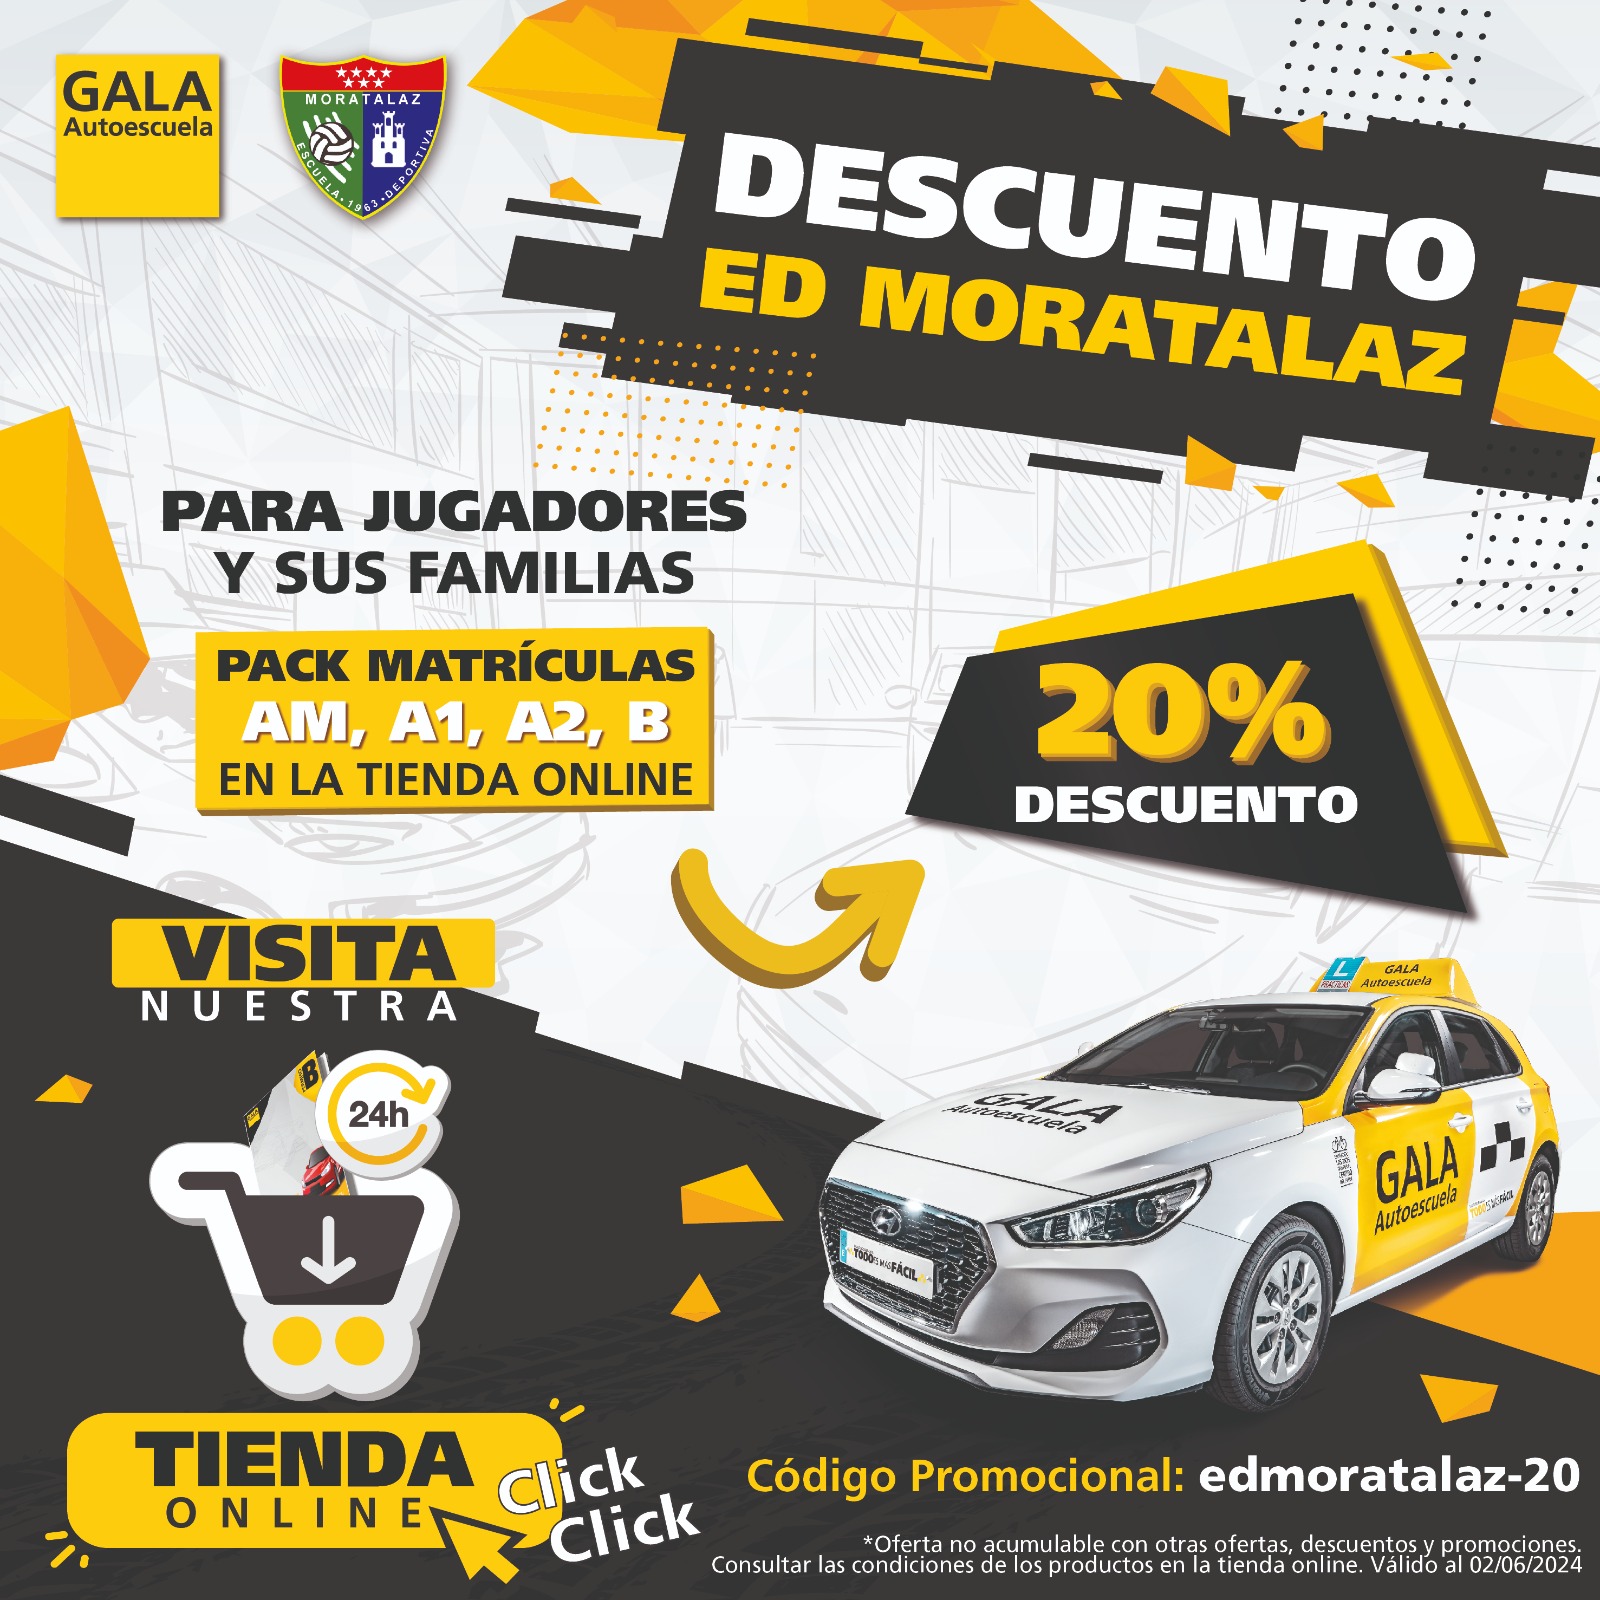 Autoescuela Gala ofrece un 20% de descuento para los jugadores y familias del club